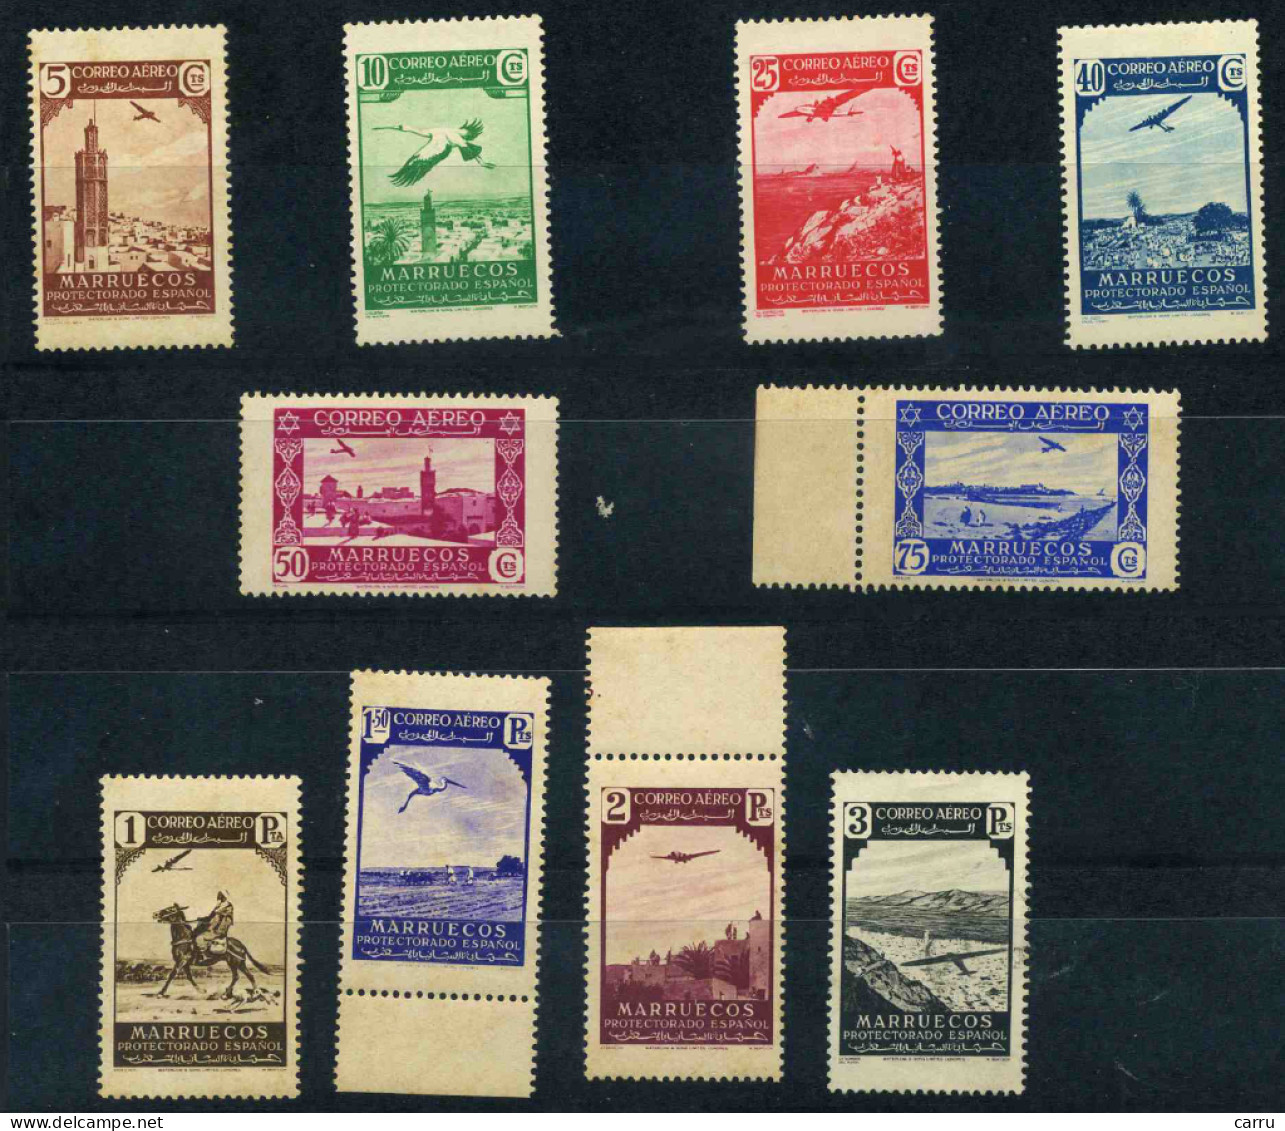 Marruecos 1938 (186/195) - Marocco Spagnolo